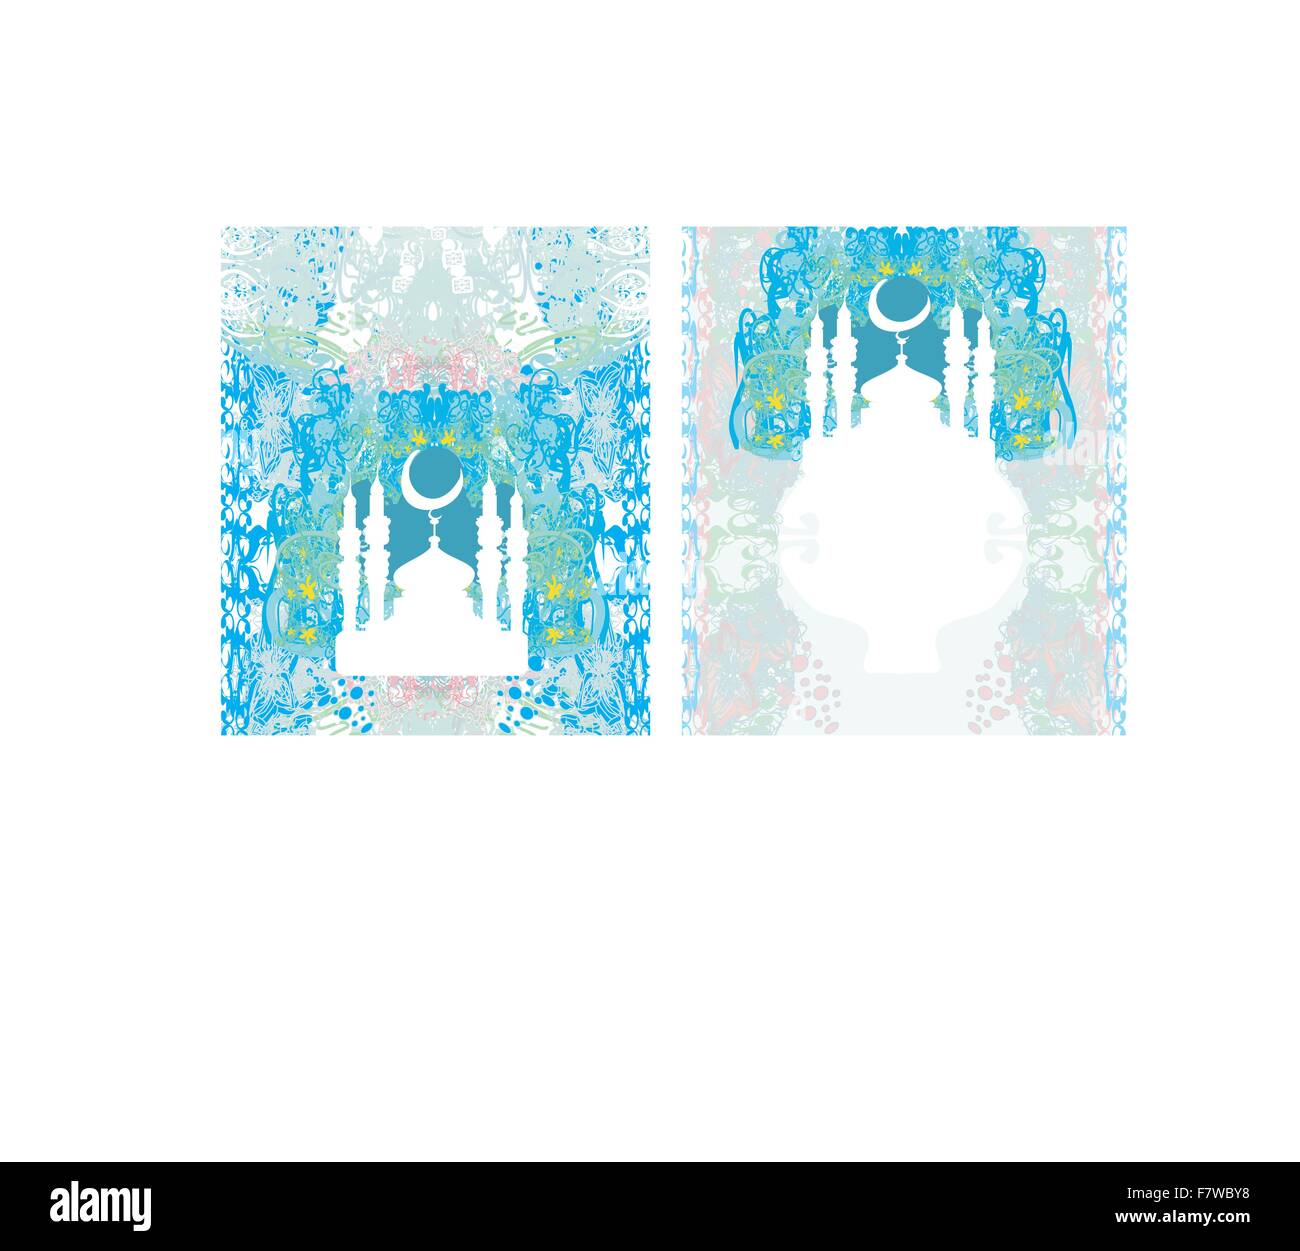 abstrakte religiöse Grußkarten - Ramadan Kareem Design Stock Vektor